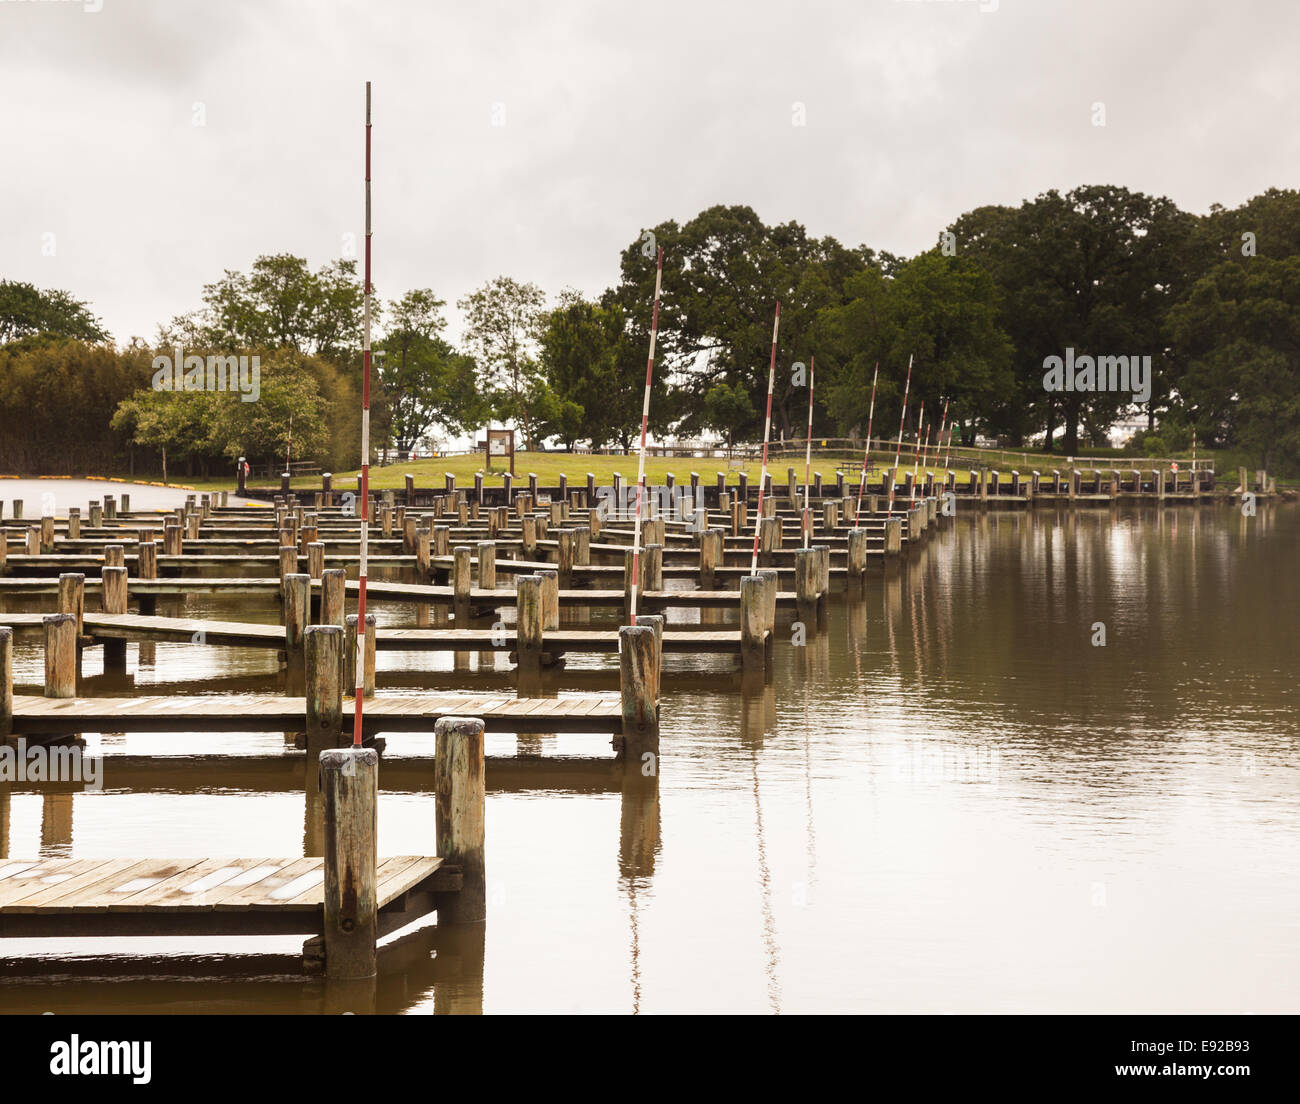 Rows of empty boat dock harbor Stock Photo